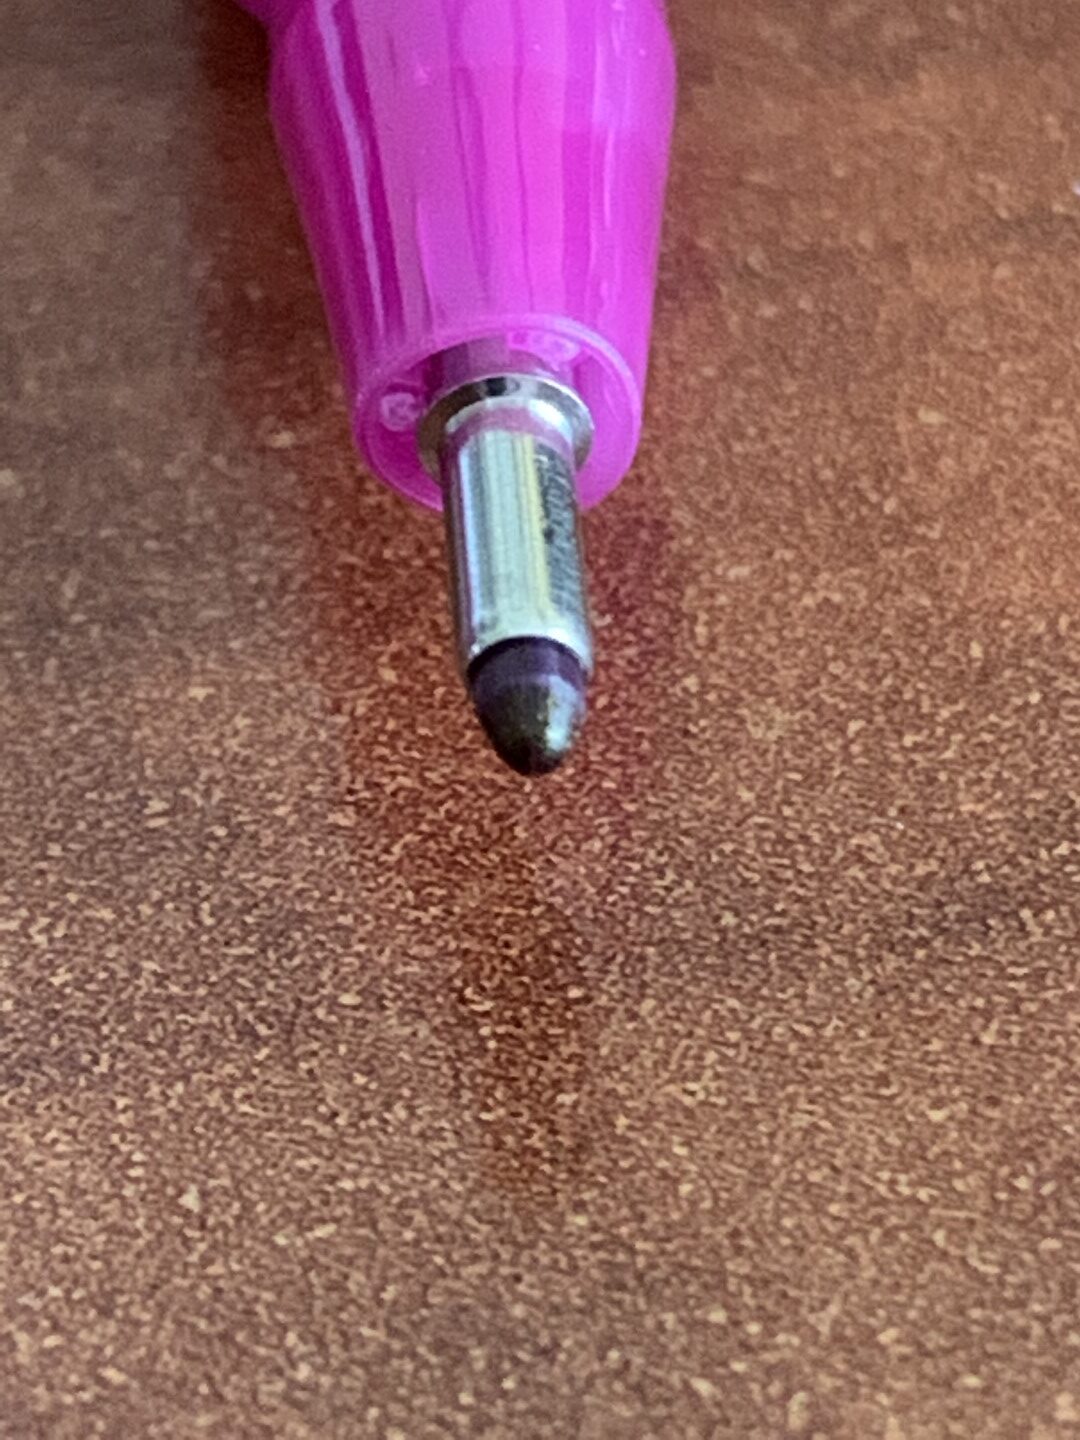 Big Idea Design Archives - My Pen Needs InkMy Pen Needs Ink